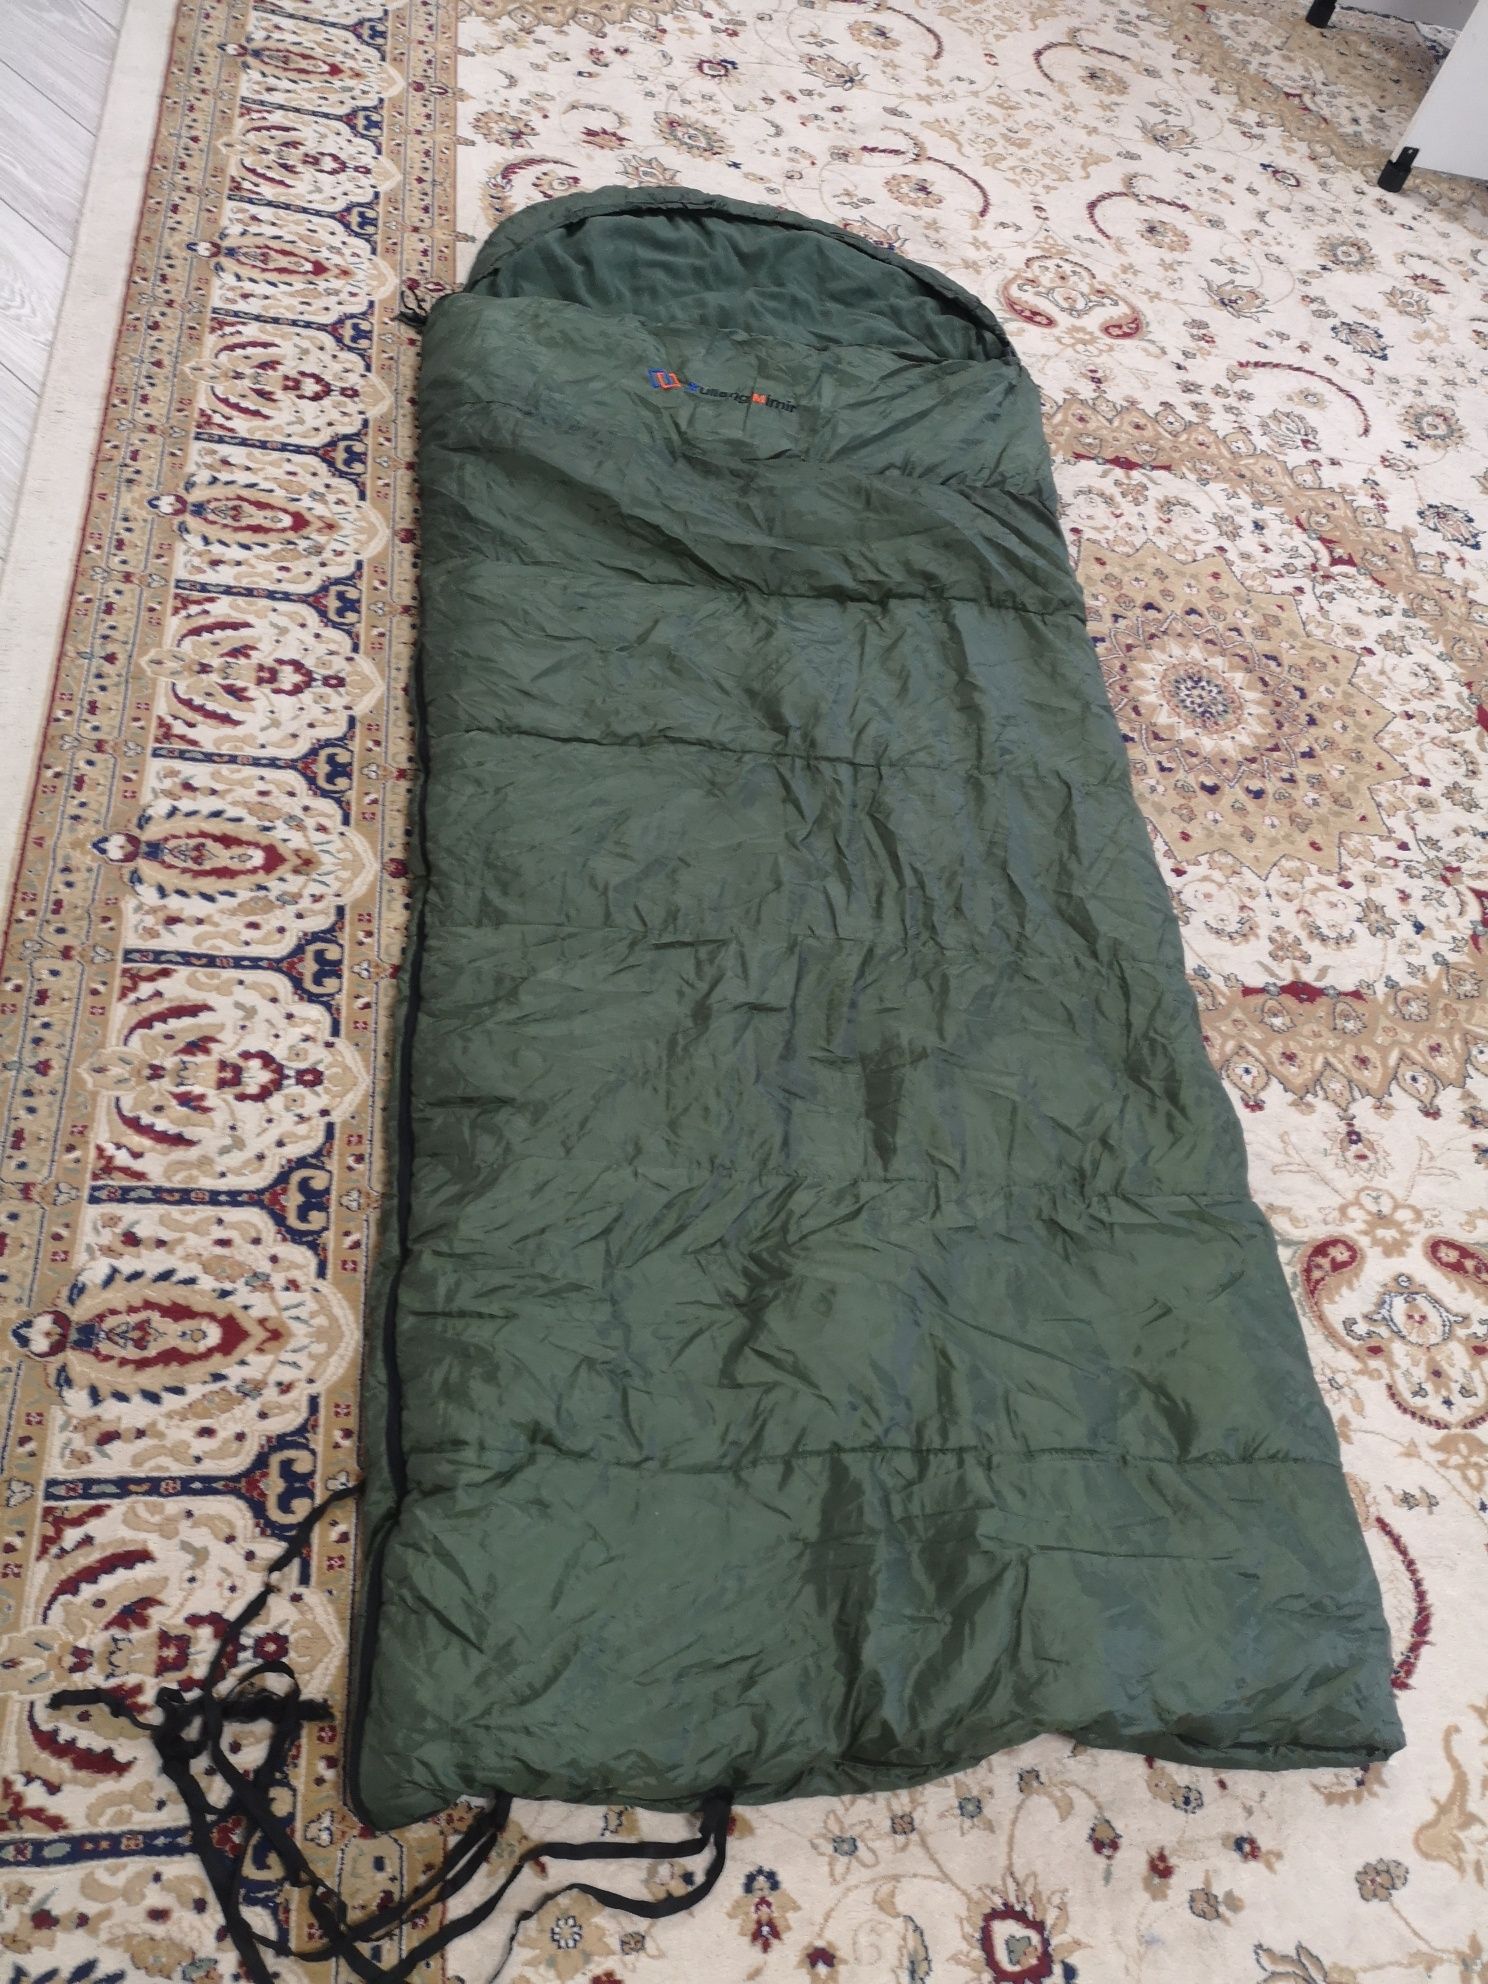 Срочно продам большое походное спальное одеяло, размер 235 на 95.